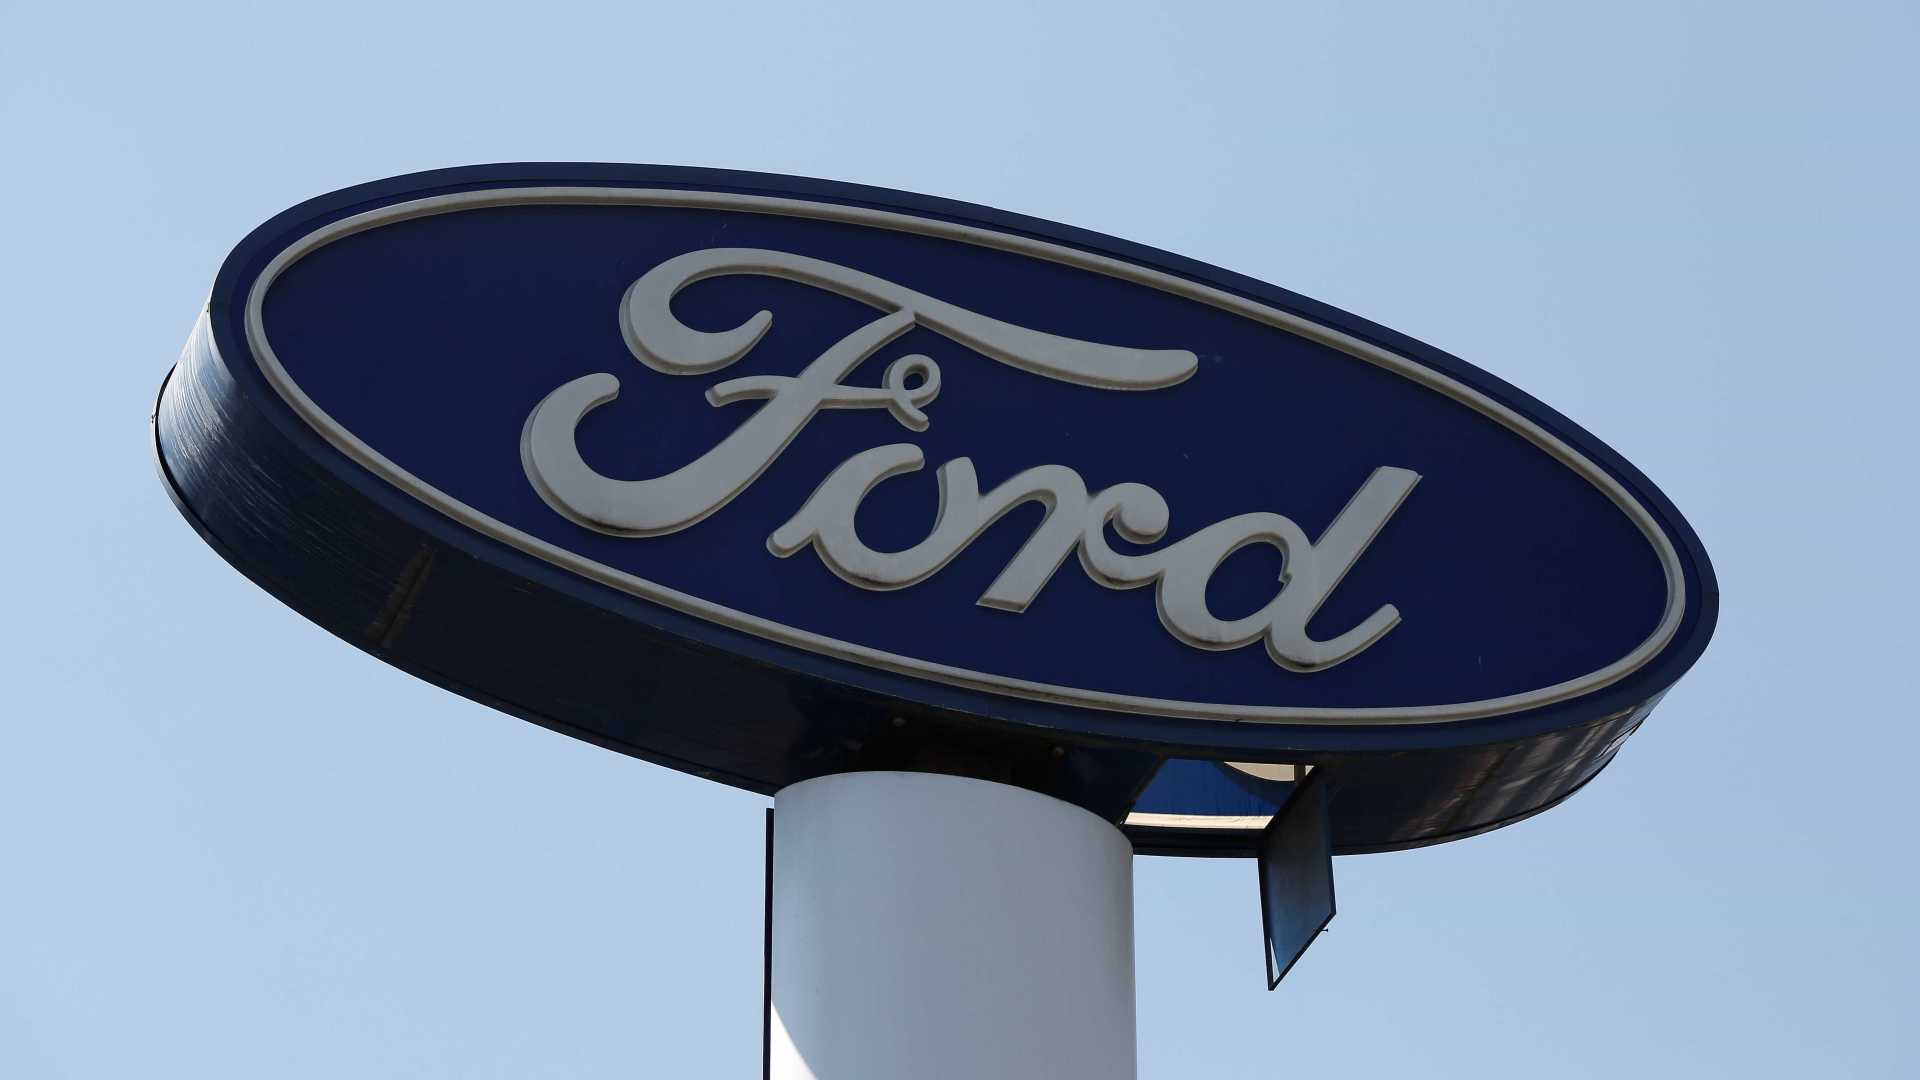 Proposta da Fazenda para Rota 2030 não é tão boa, diz Ford